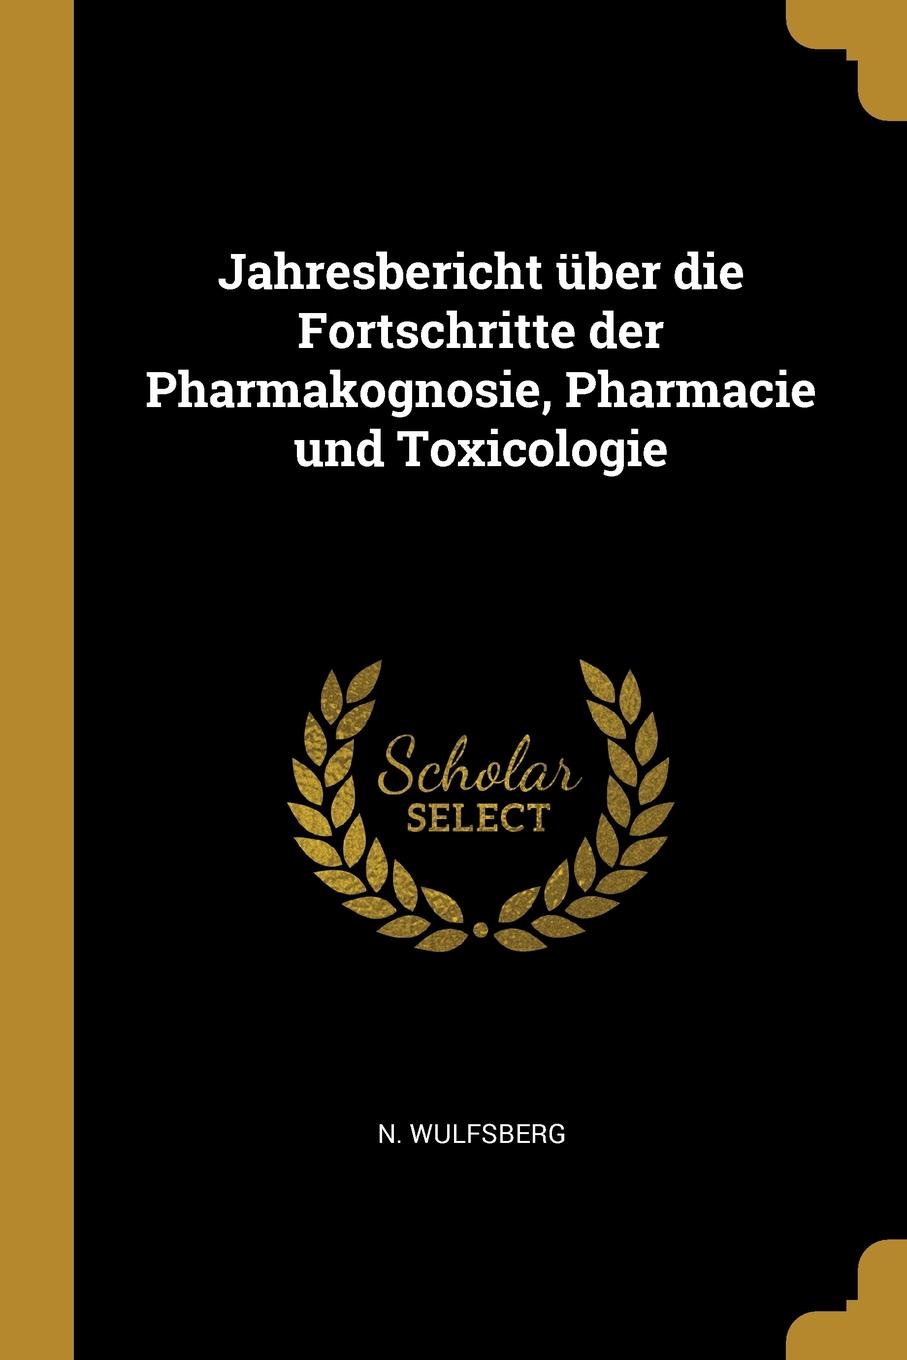 Jahresbericht uber die Fortschritte der Pharmakognosie, Pharmacie und Toxicologie